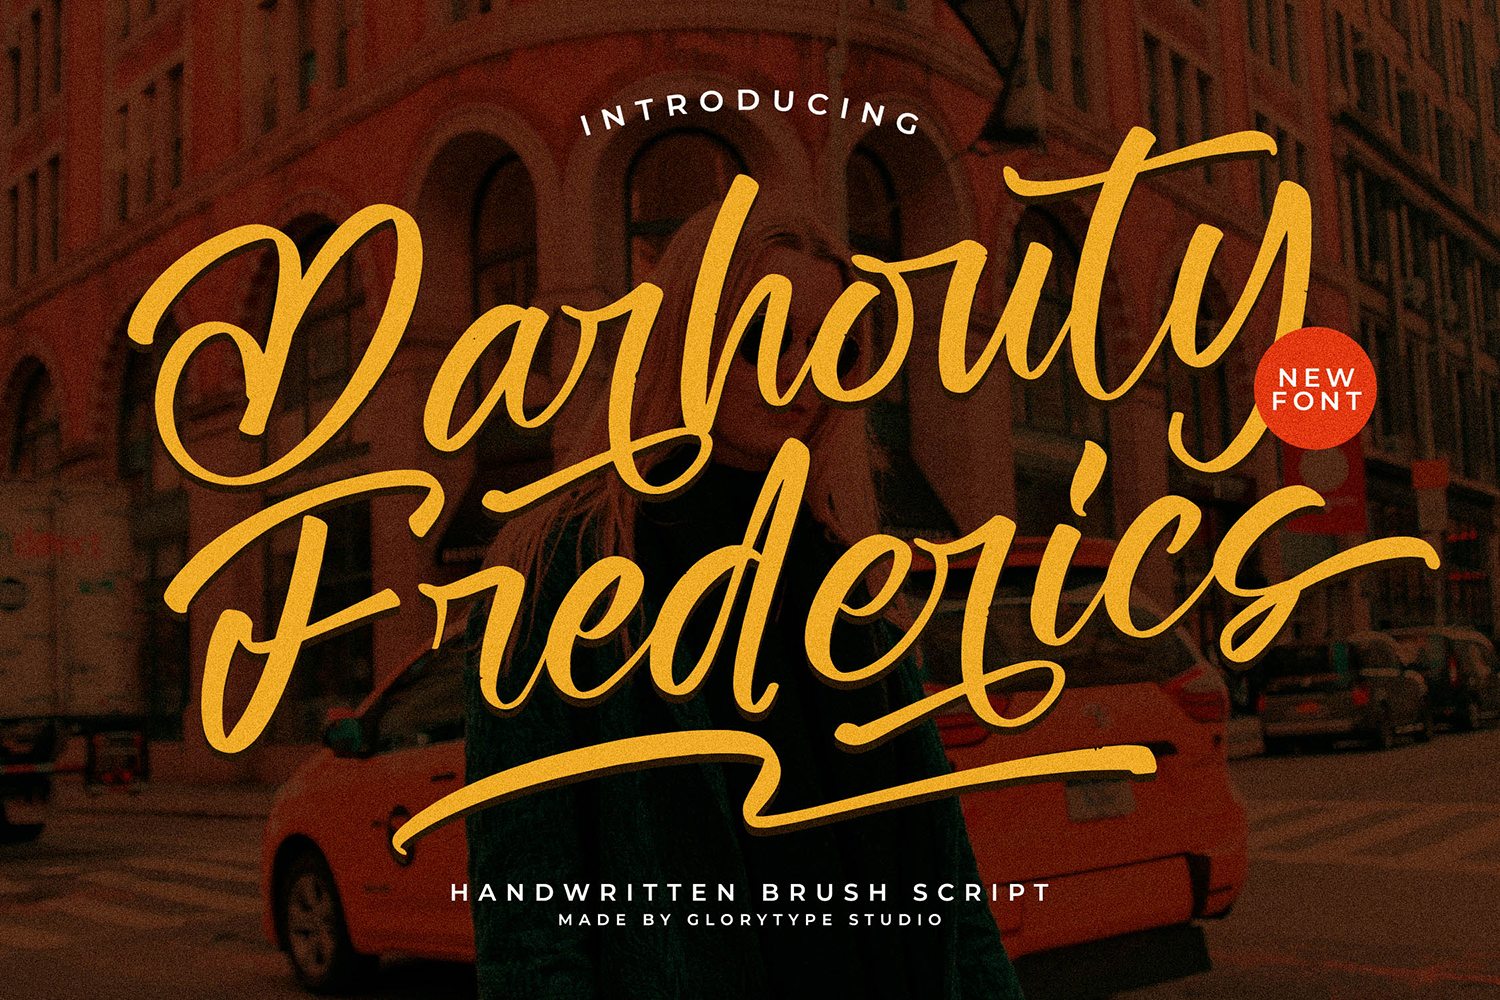 Darhouty Frederics Free Font